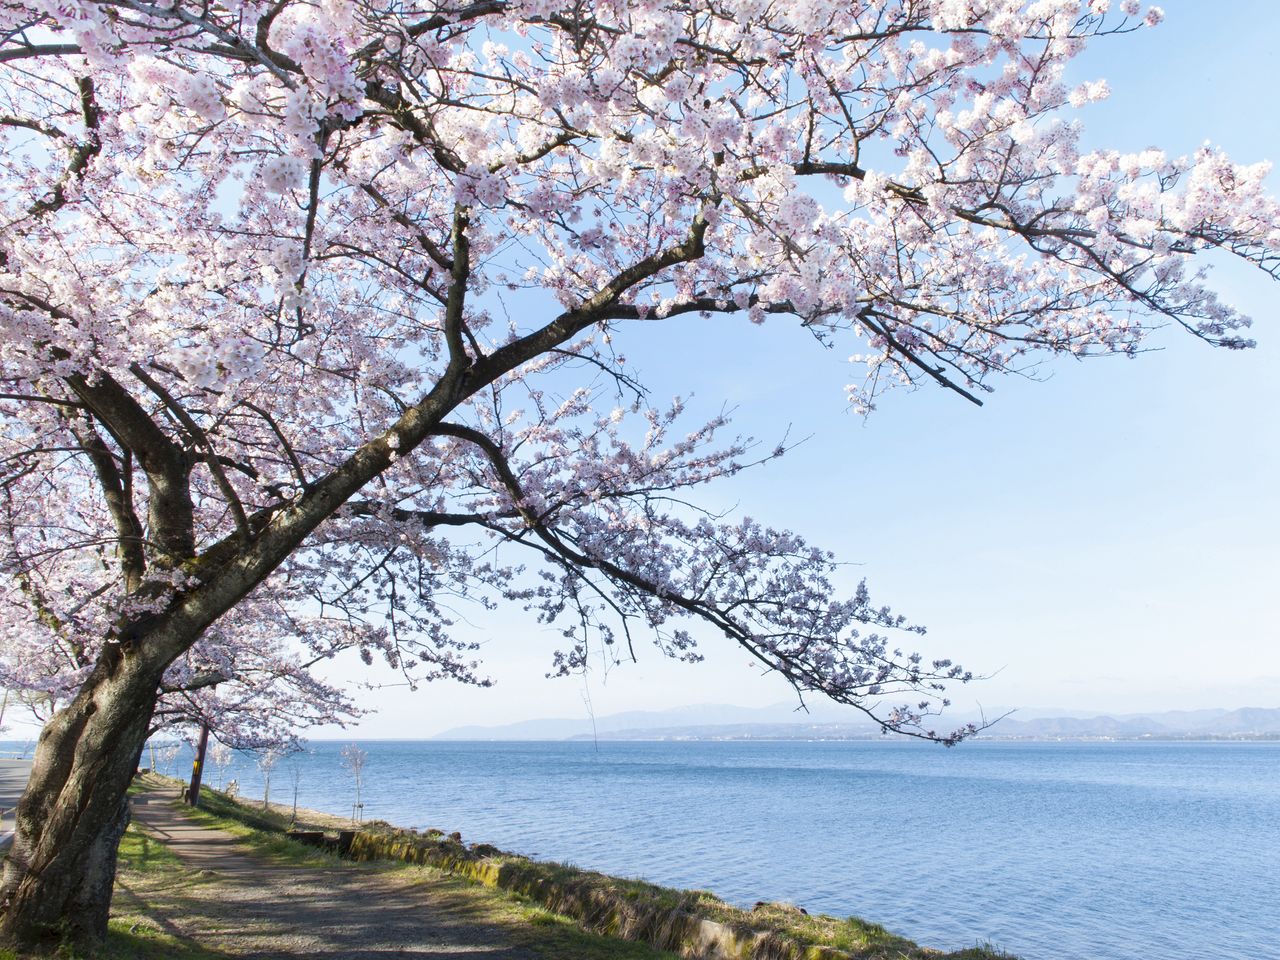 Бледно-розовые цветы сакуры прекрасно гармонируют с синевой водной глади и голубым небом